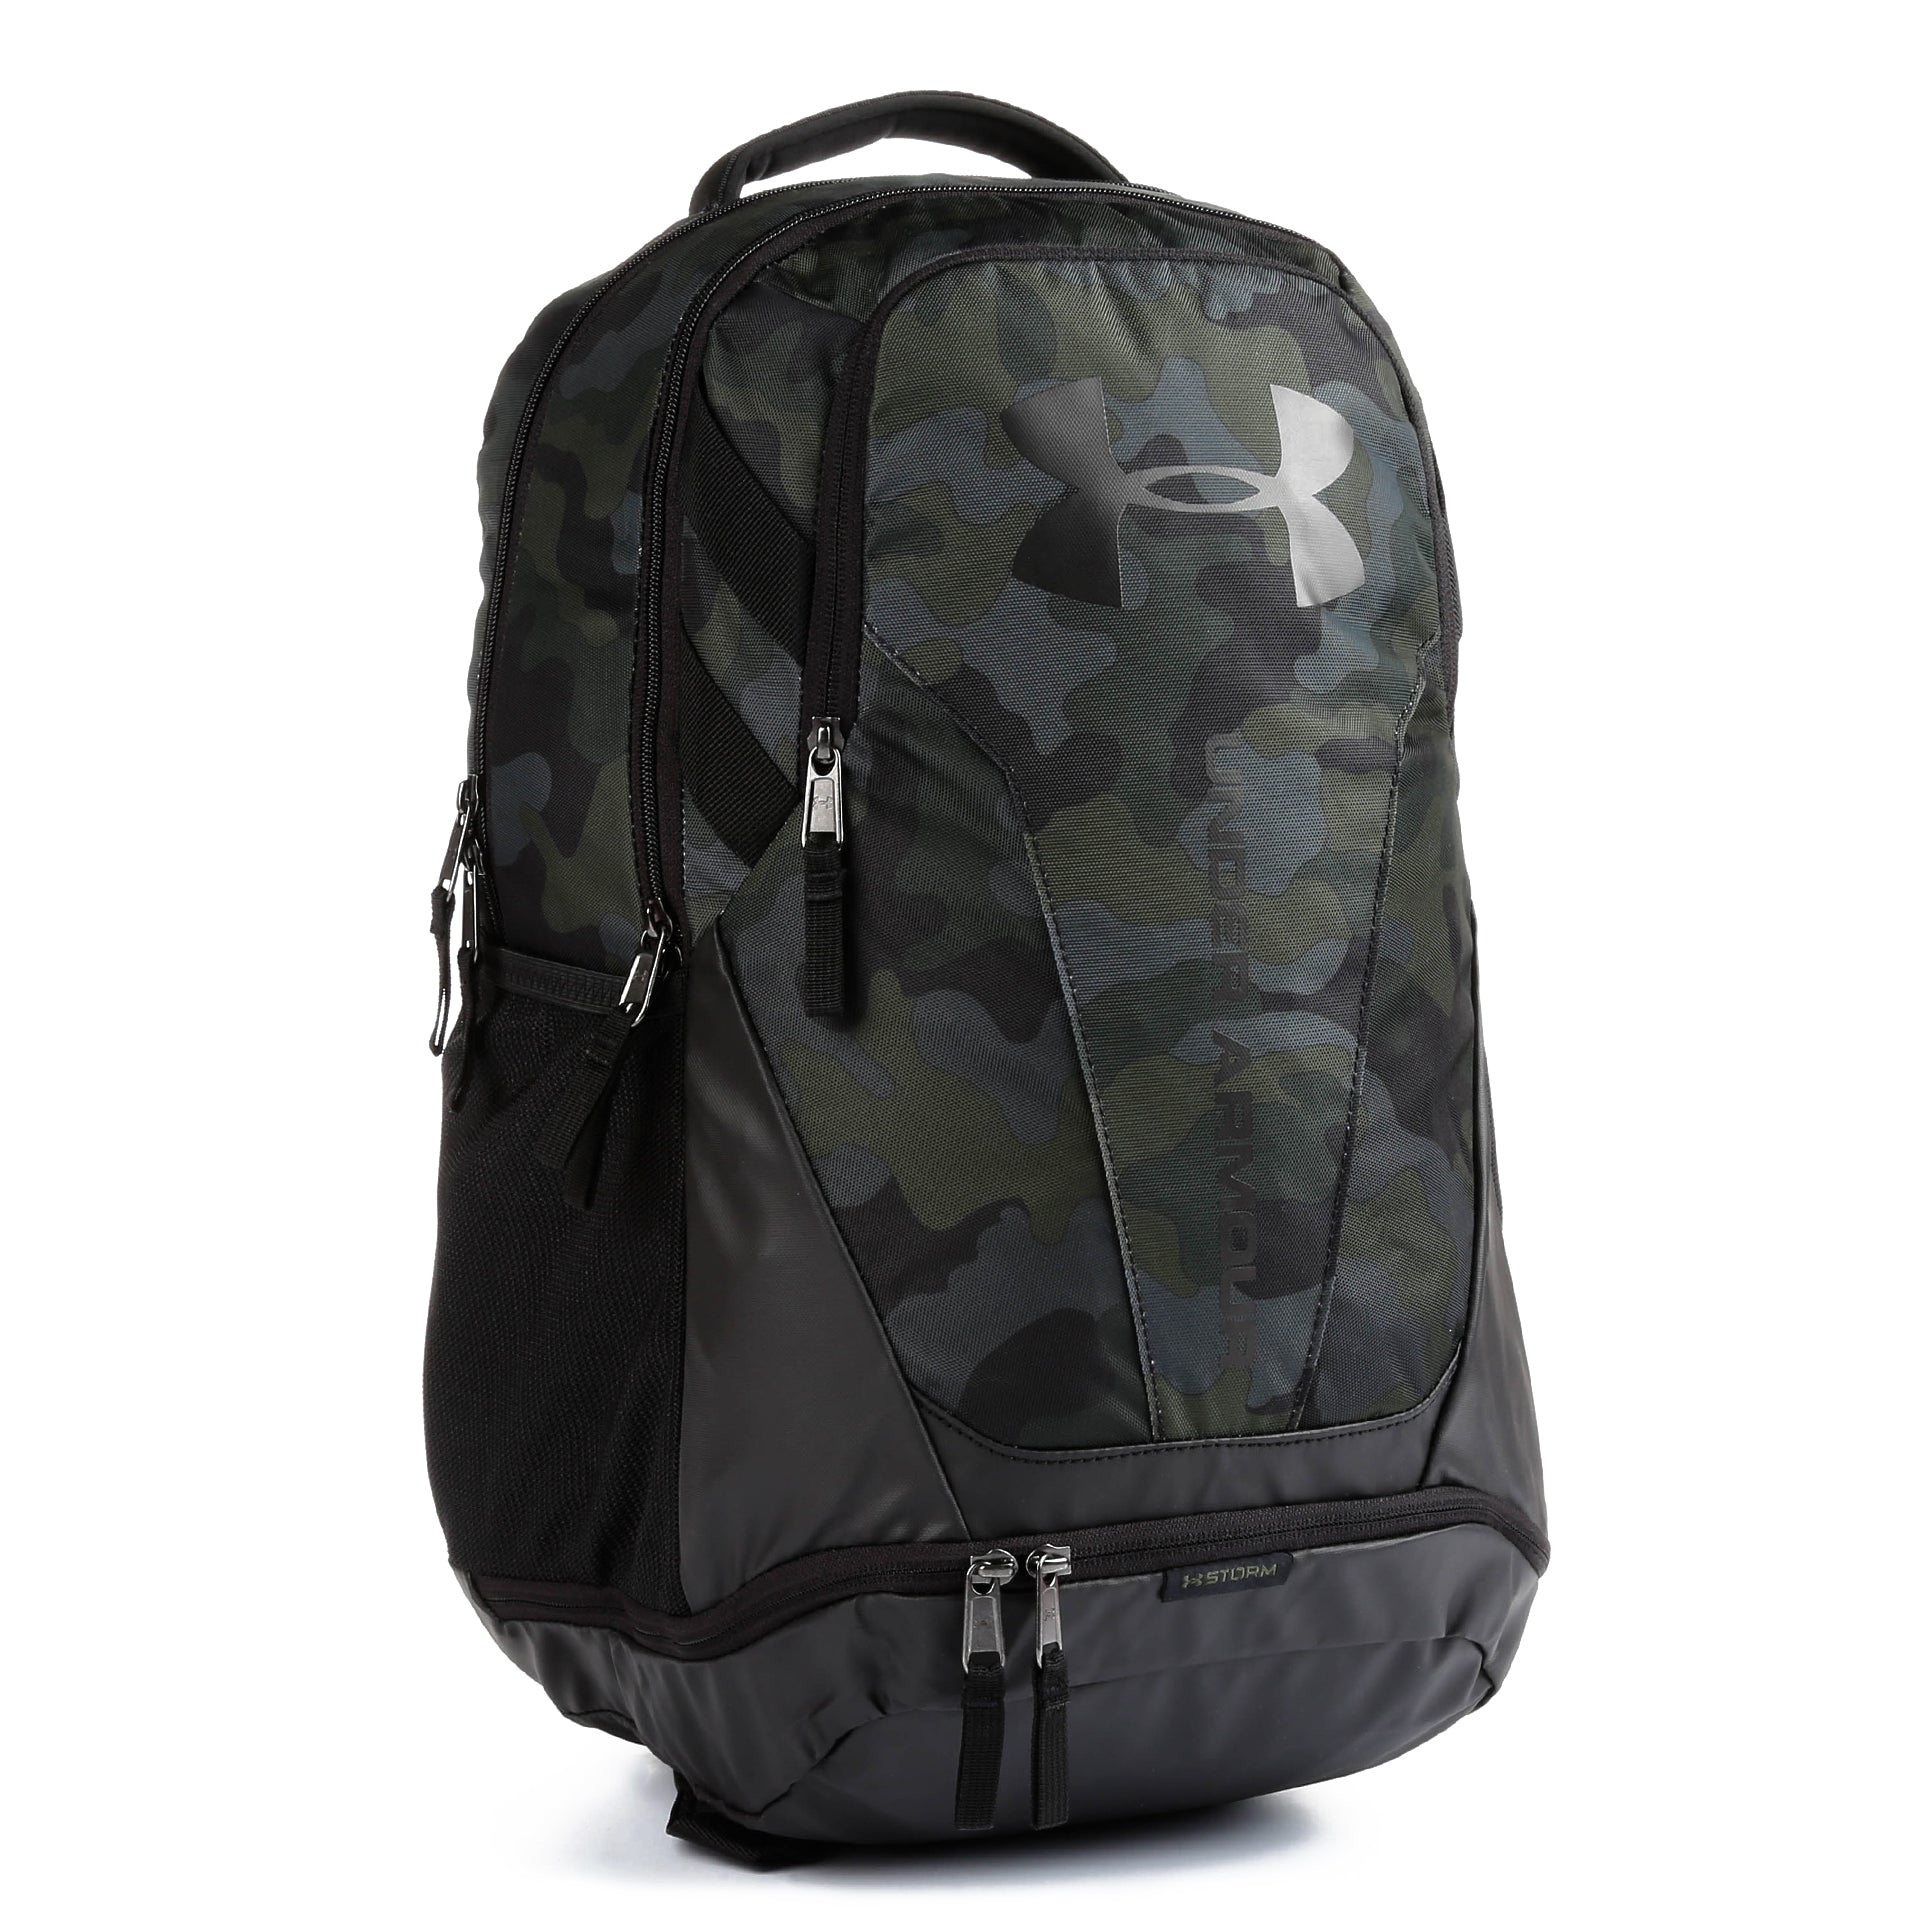 Under Armour Hustle 3.0 Backpack - Desert Sand / Black - New Star